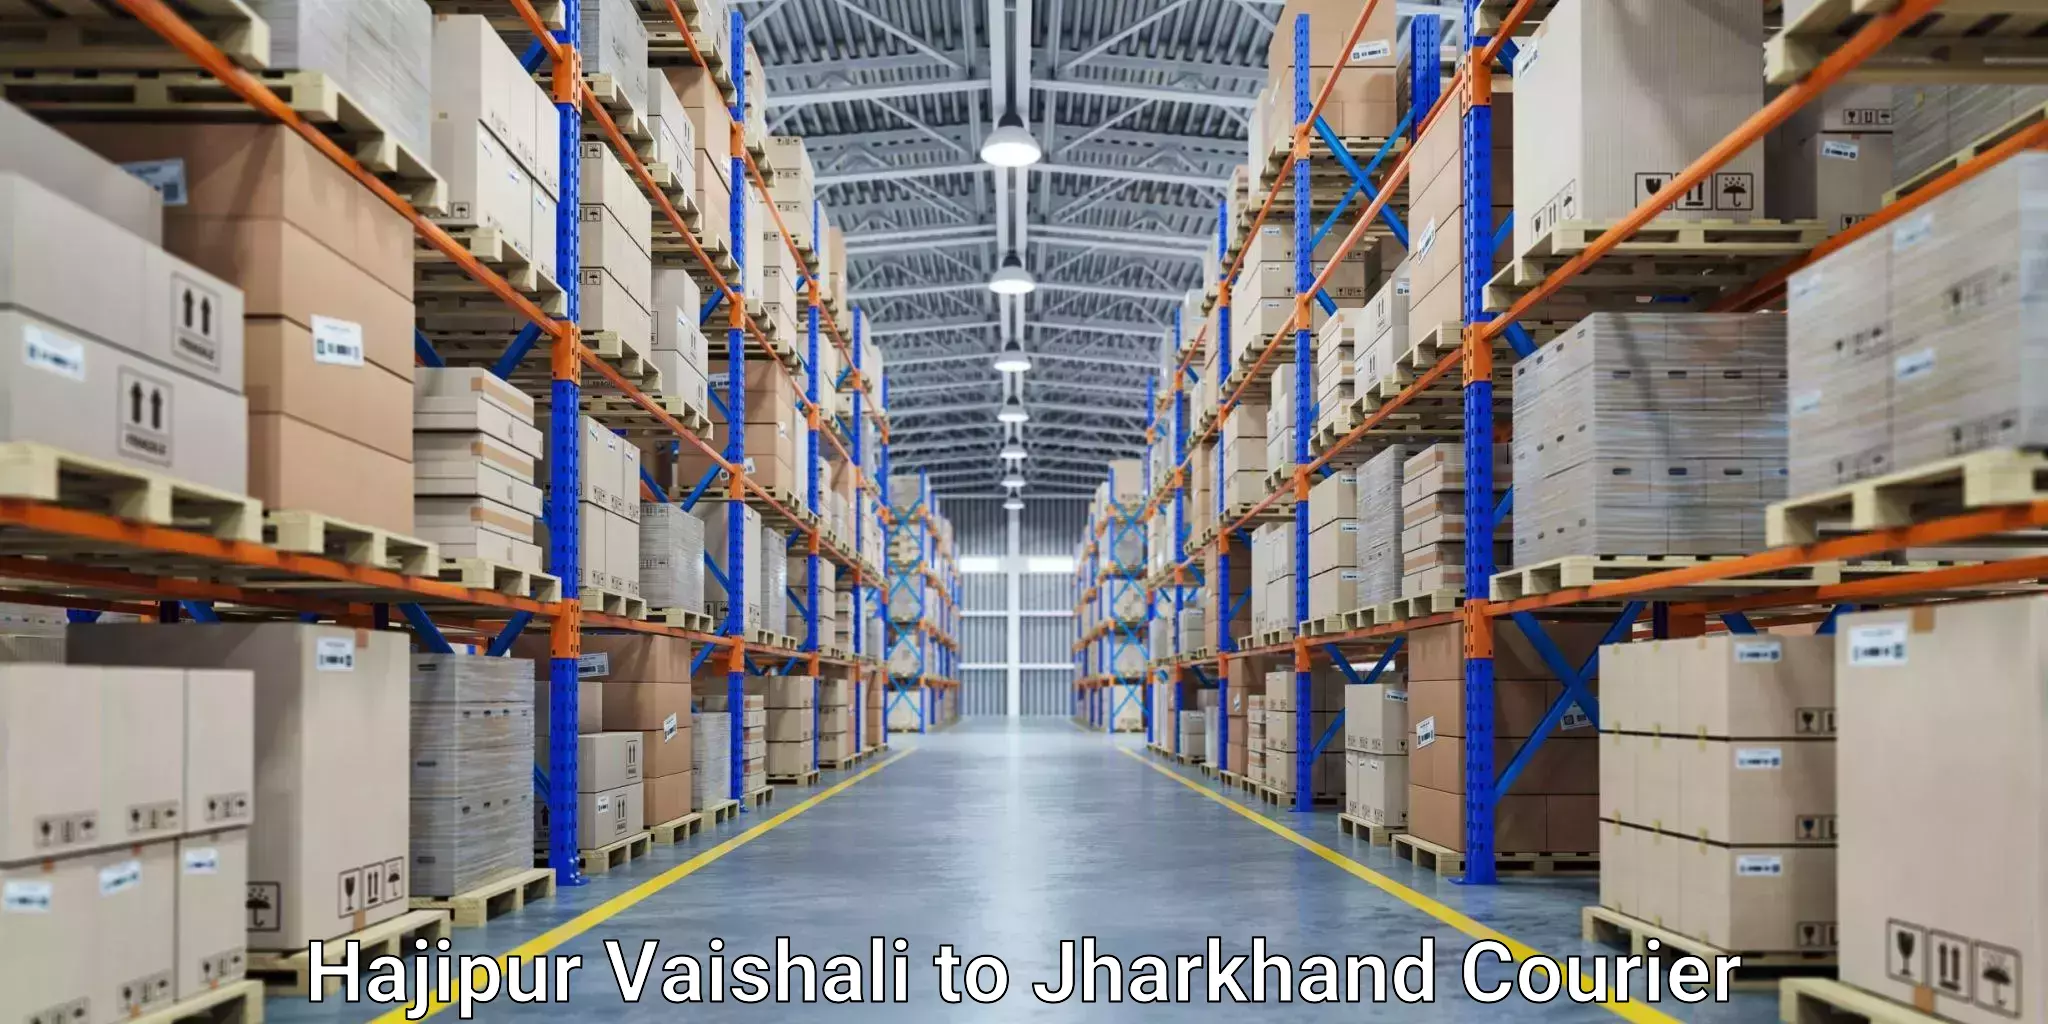 Shipping and handling Hajipur Vaishali to Seraikella